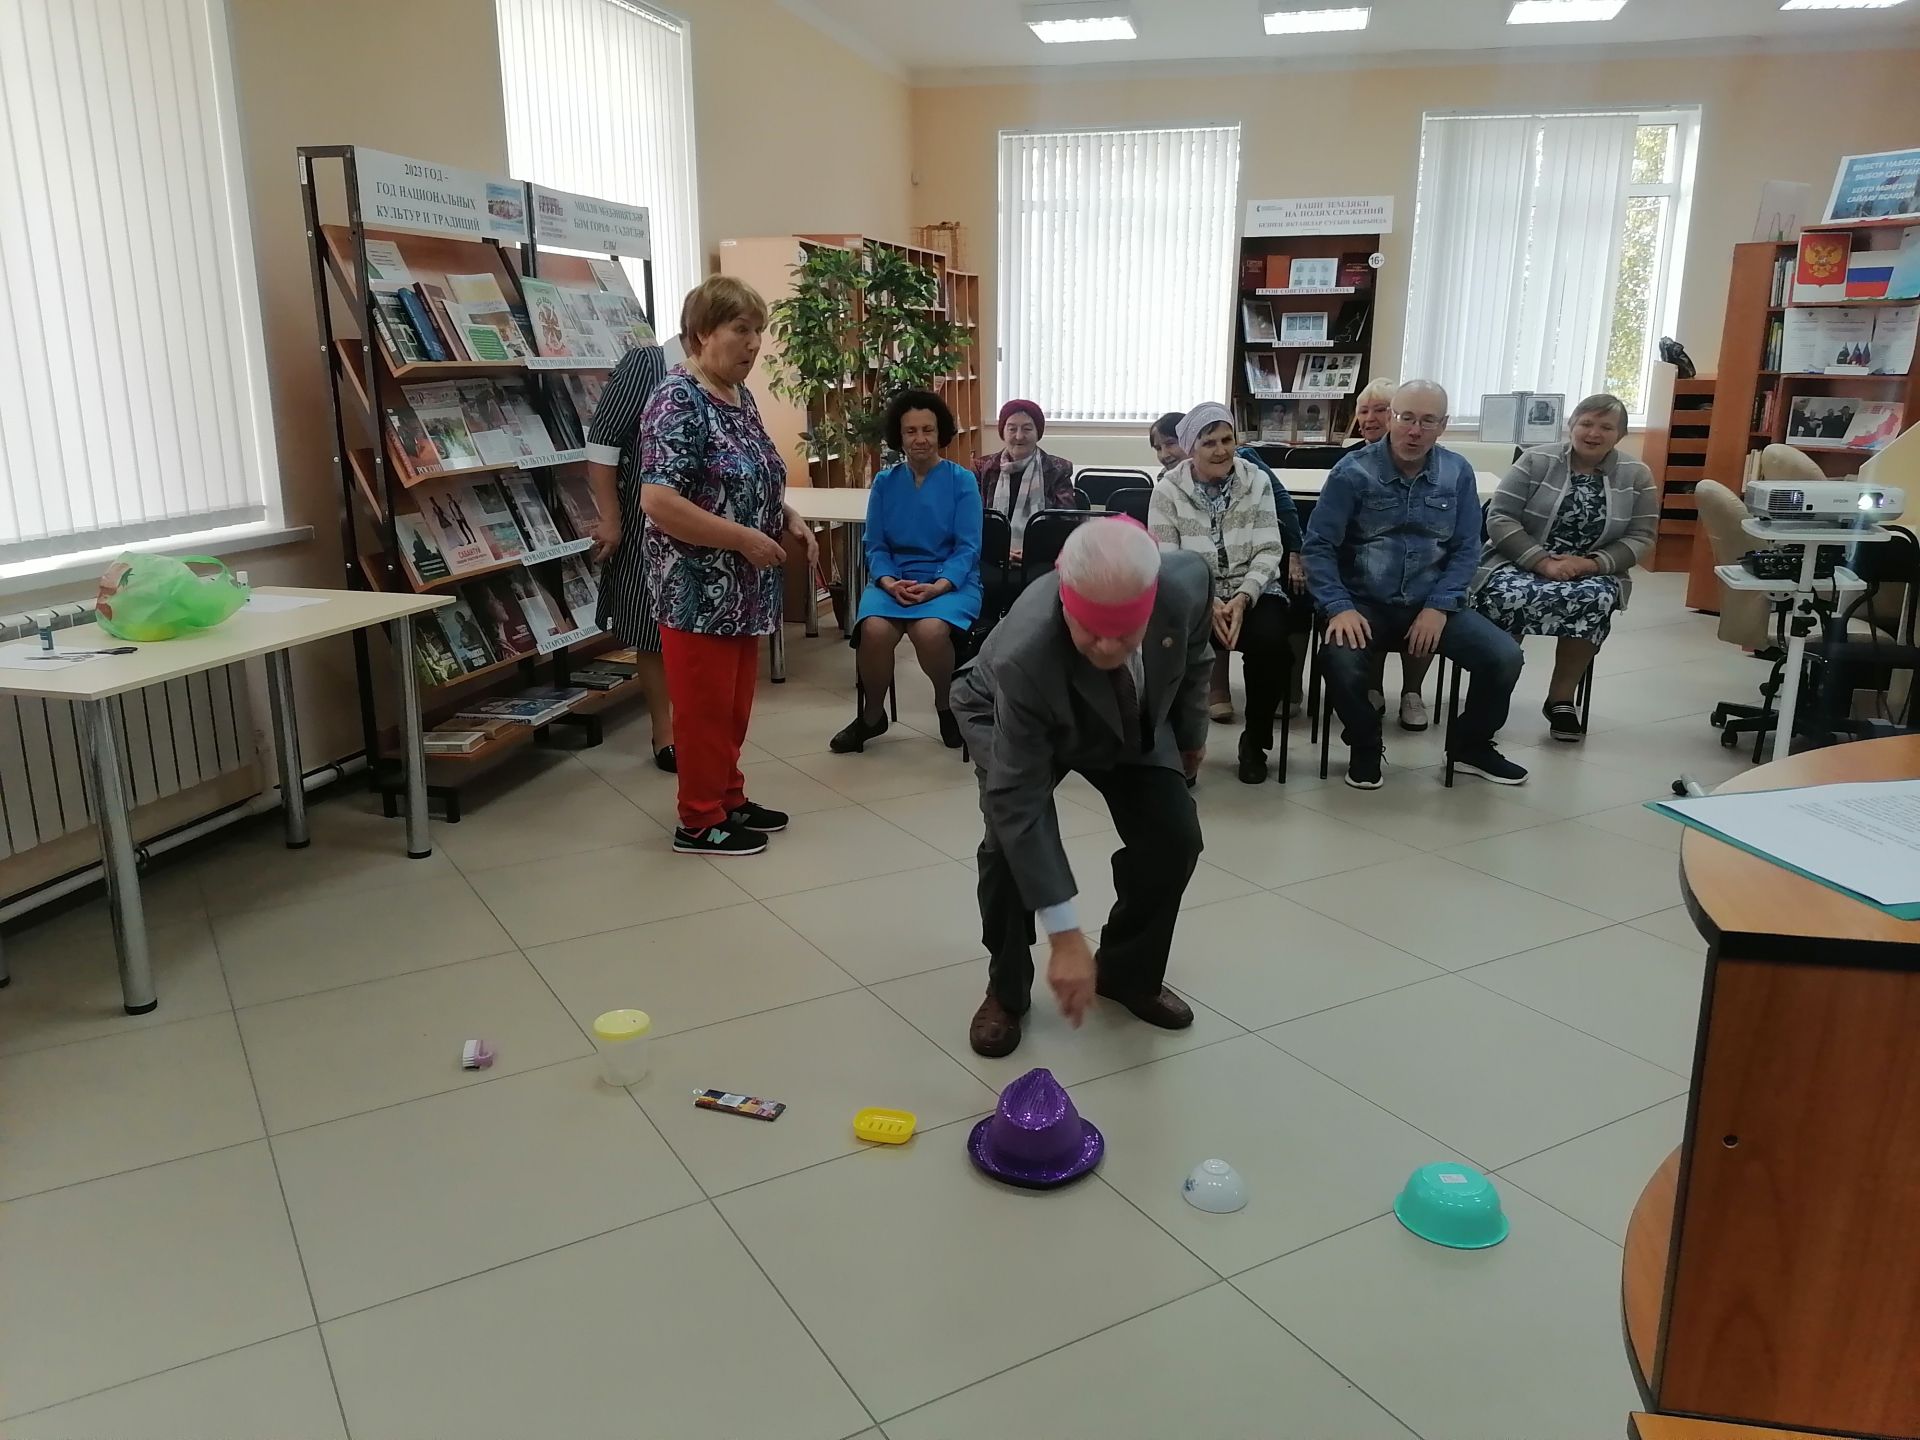 В районной библиотеке организовали литературно-конкурсную программу для пожилых